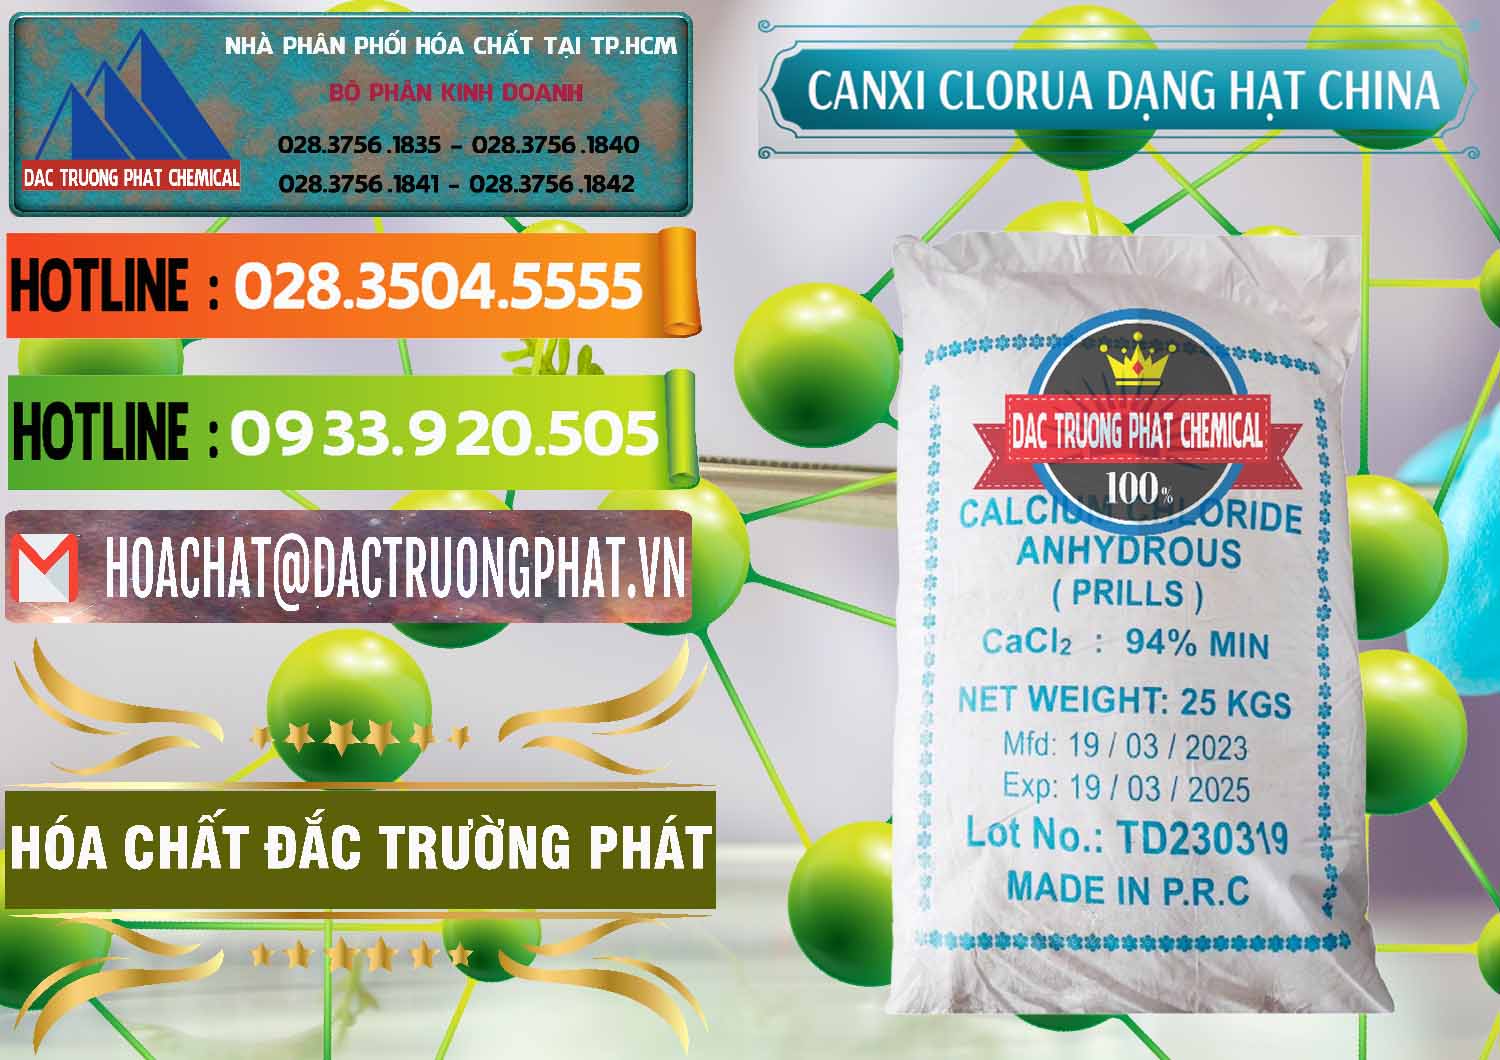 Đơn vị chuyên bán & cung cấp CaCl2 – Canxi Clorua 94% Dạng Hạt Trung Quốc China - 0373 - Nơi cung cấp & kinh doanh hóa chất tại TP.HCM - cungcaphoachat.com.vn